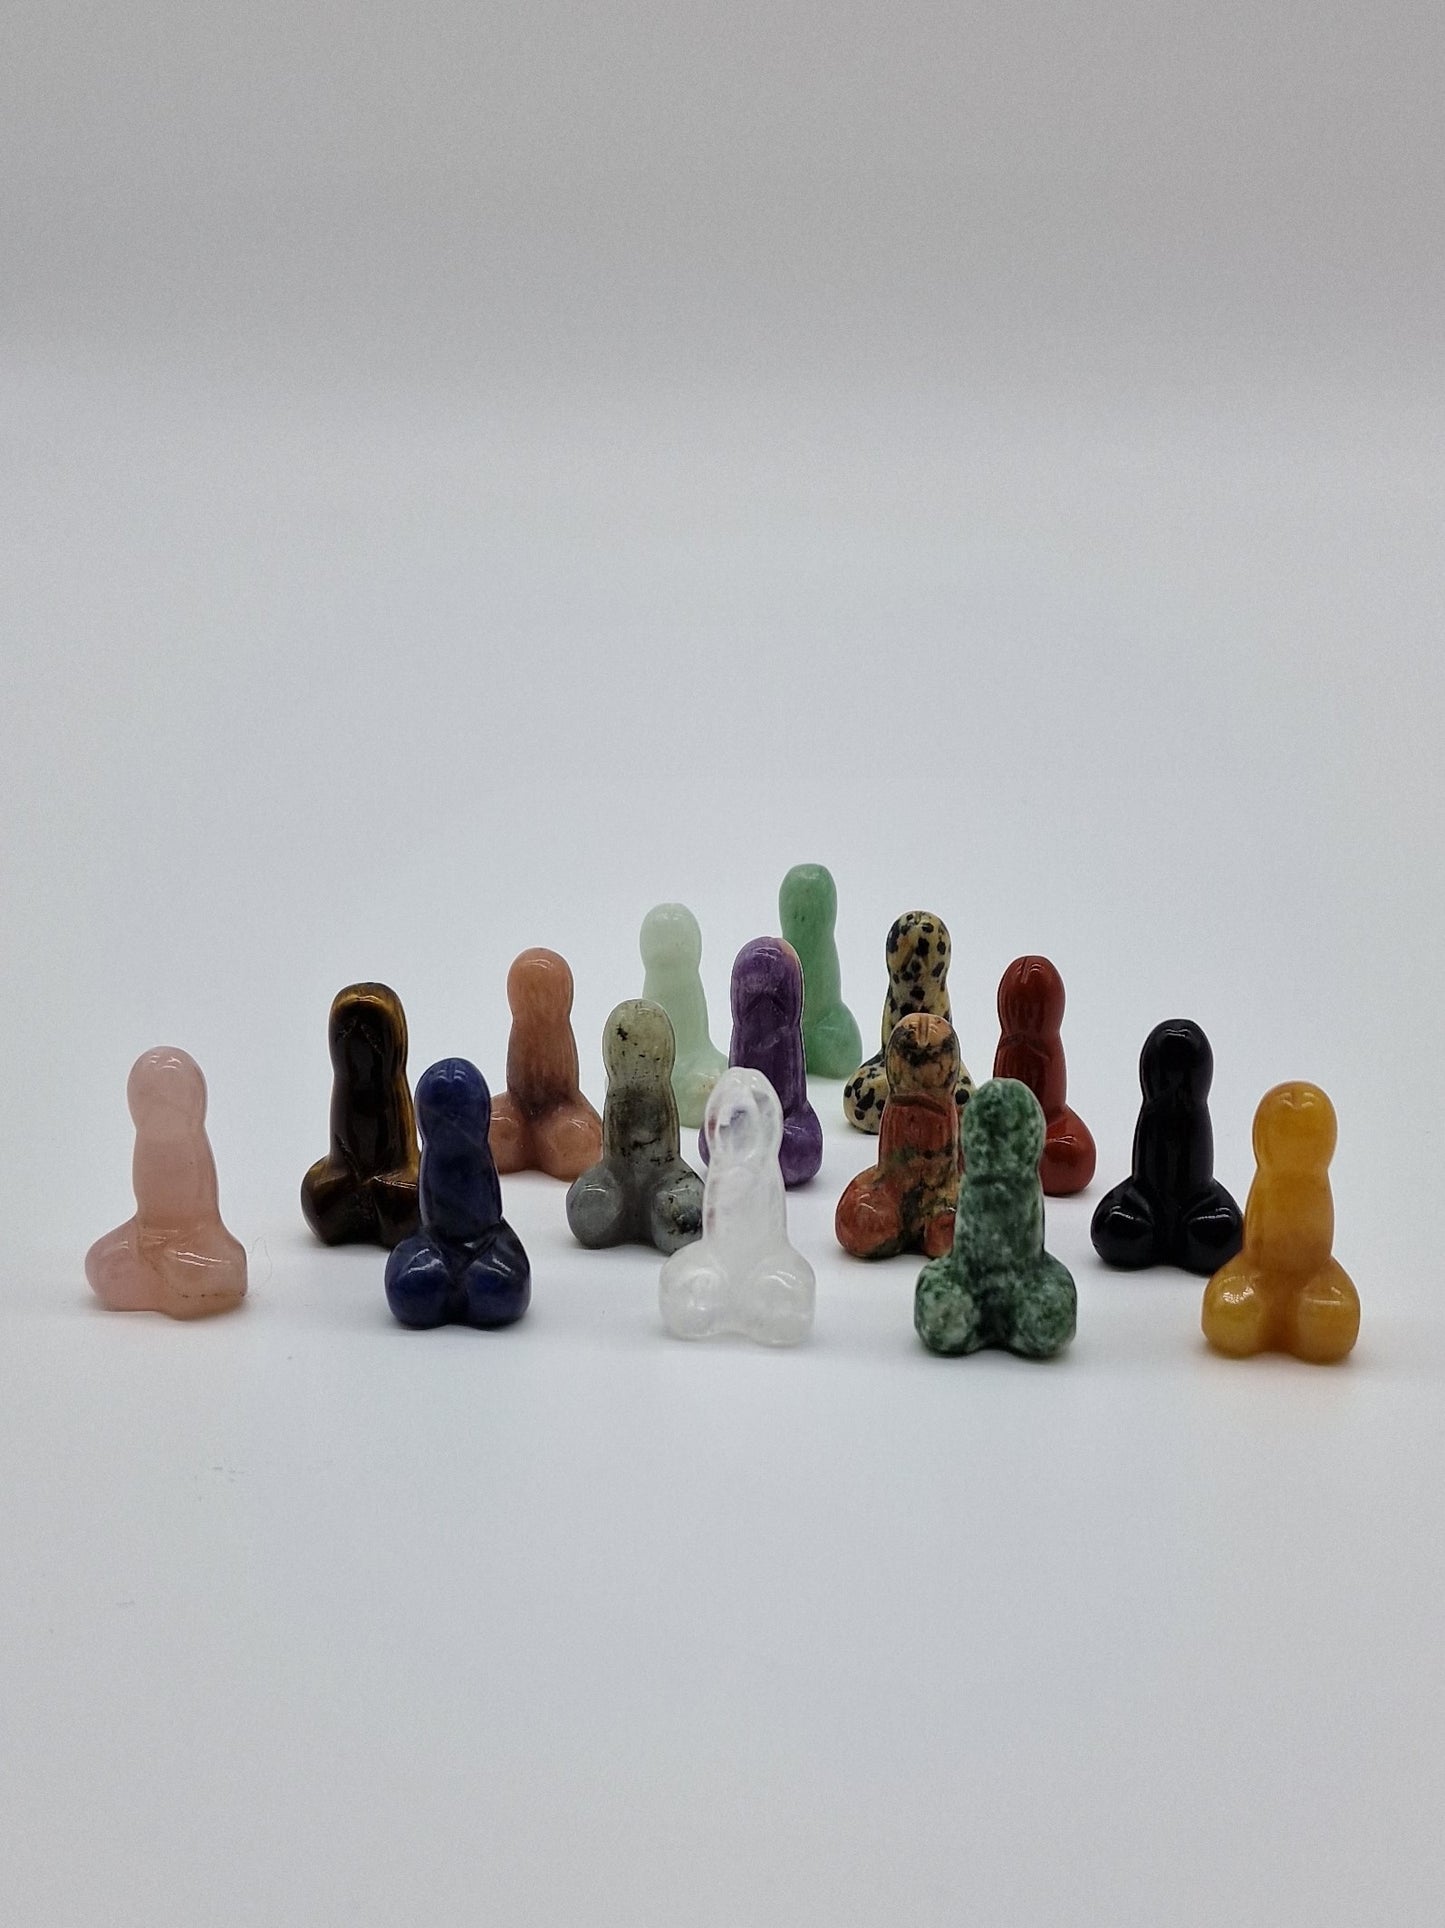 Kristall snoppar eller penis - 15 mixade stenar för priset av 10. Plus en sametspåse, en bag of dicks